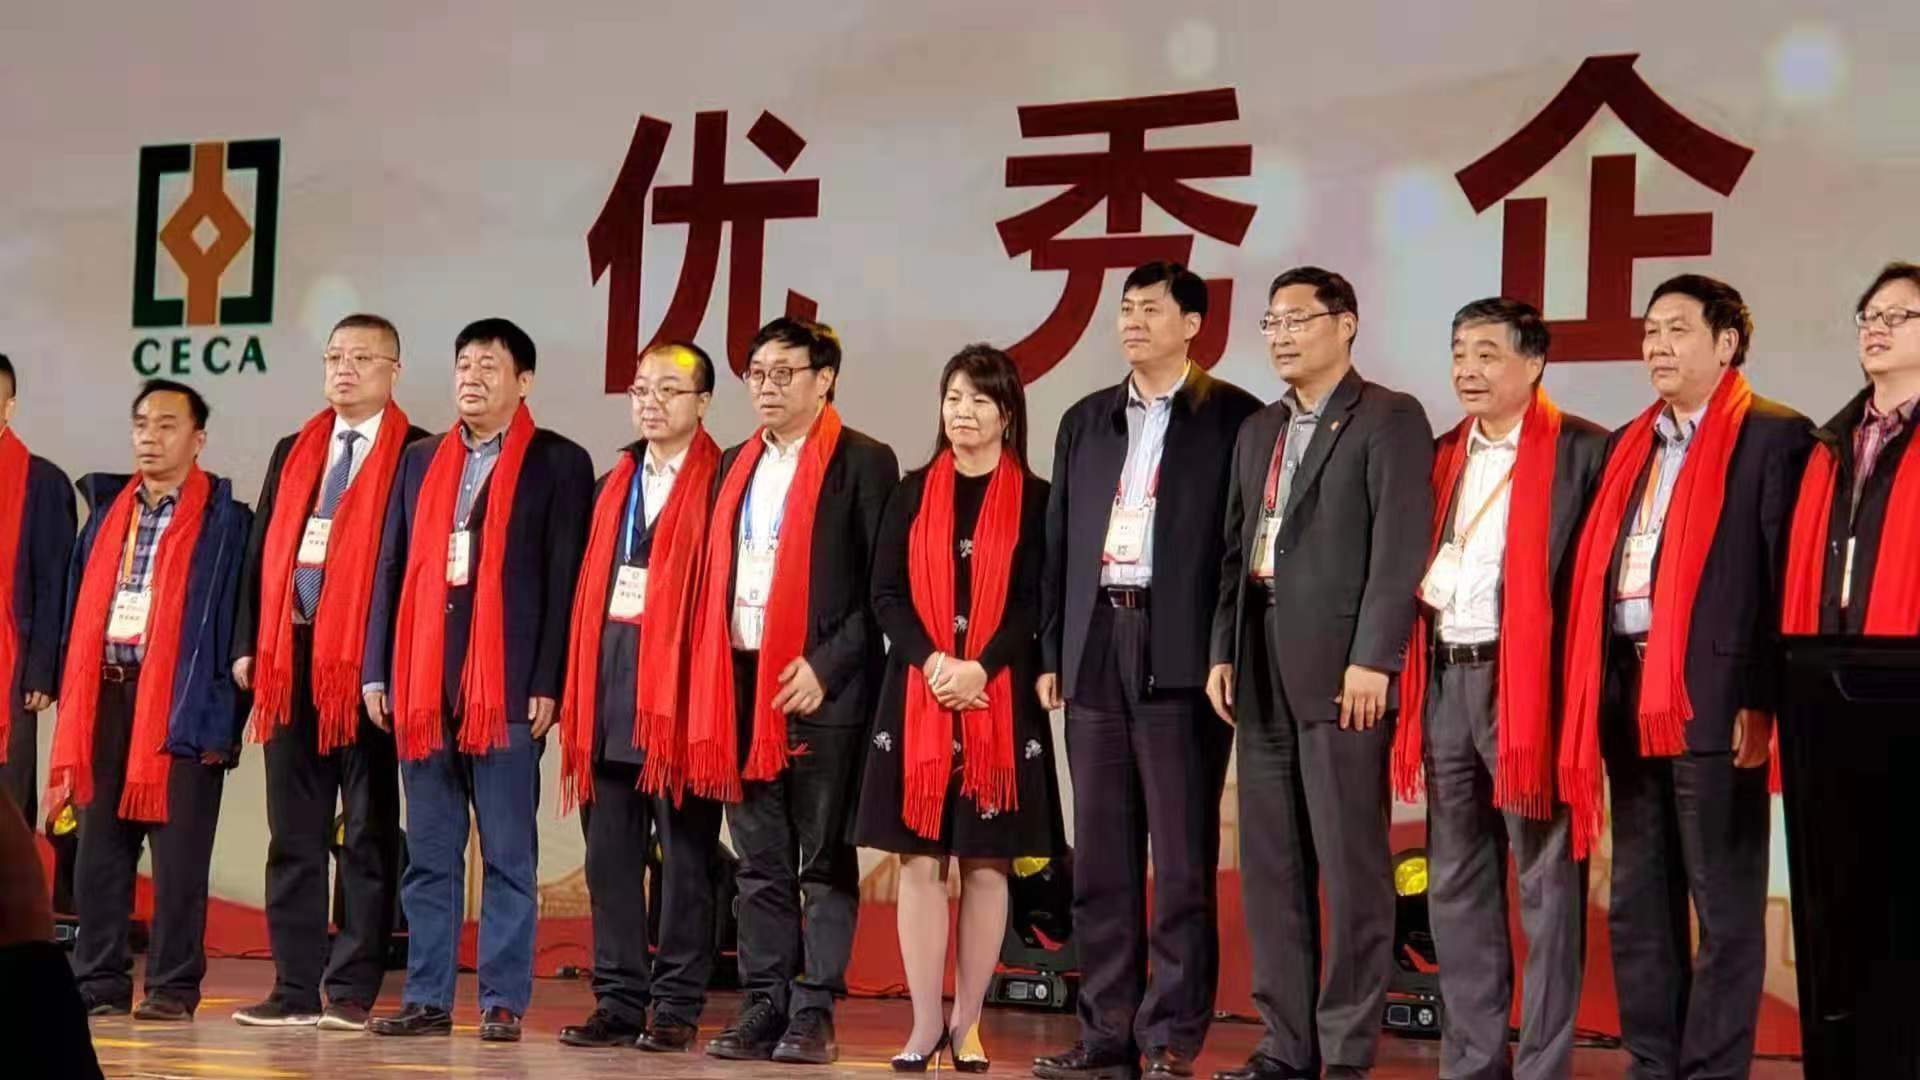 热烈祝贺全国同业协会共庆新中国成立七十周年大会在广州成功举办 我市工程勘察设计行业获得多项荣誉称号